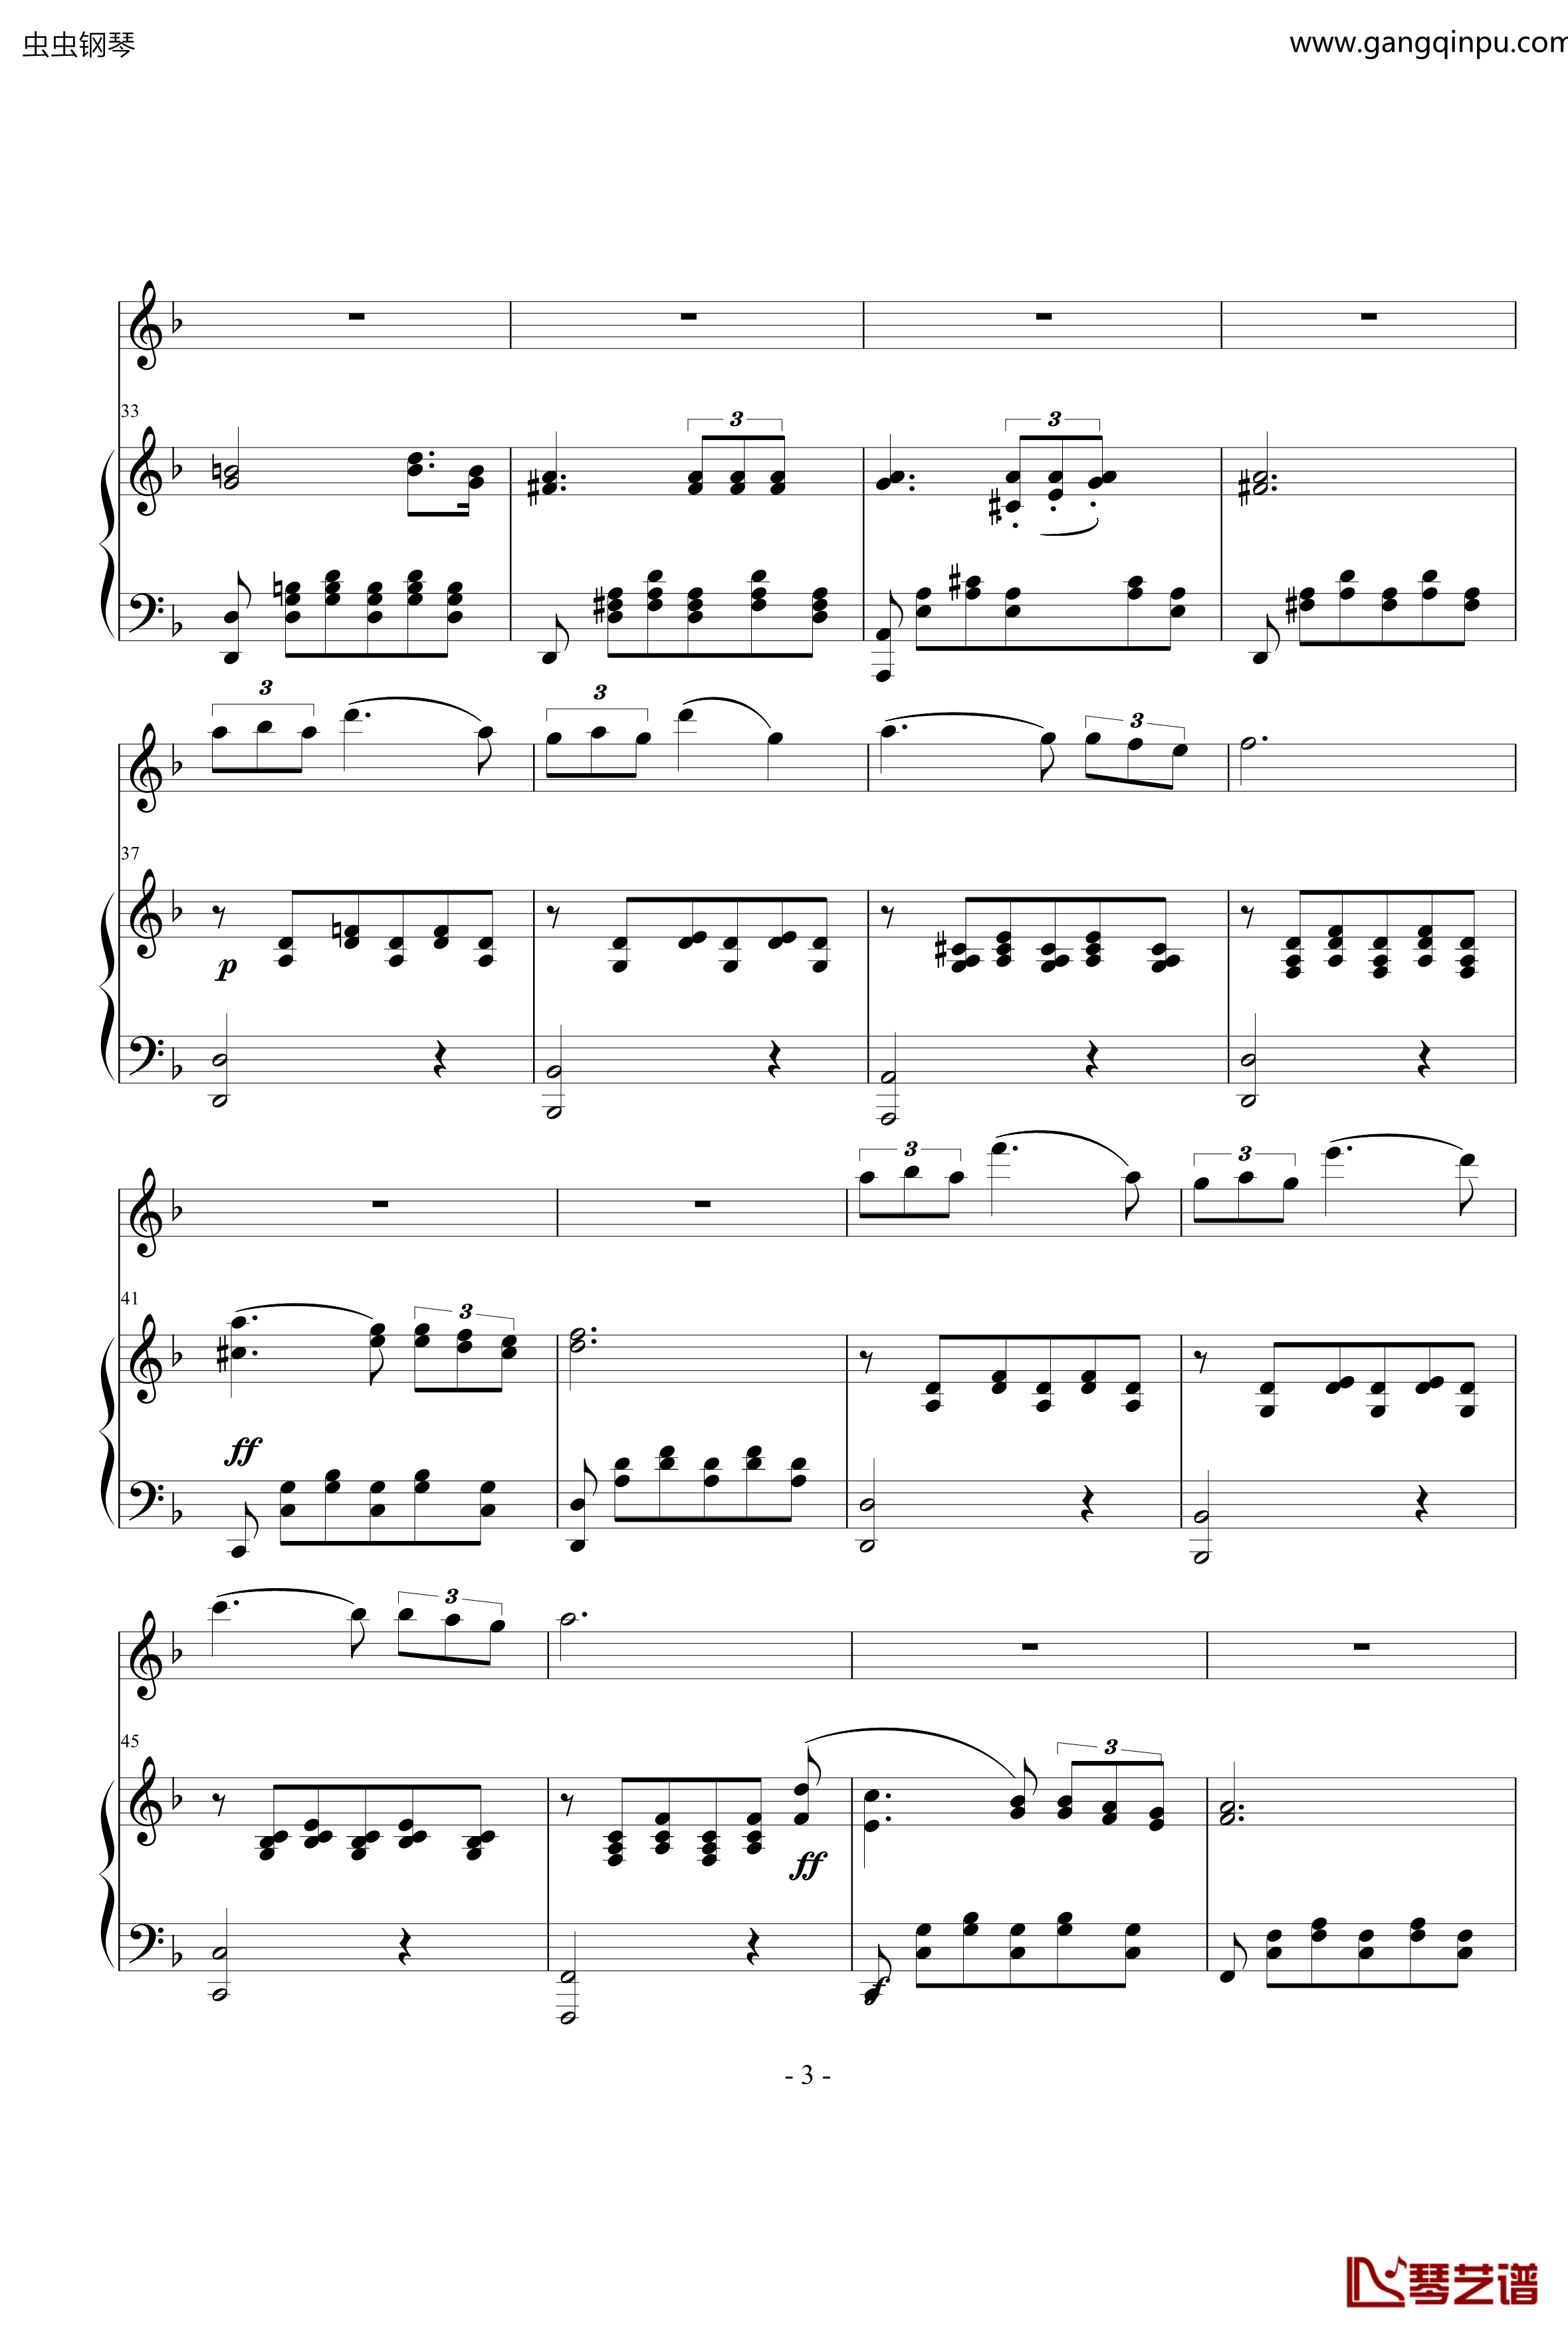 小夜曲钢琴谱-ove 格式长笛笛钢琴伴奏-舒伯特3